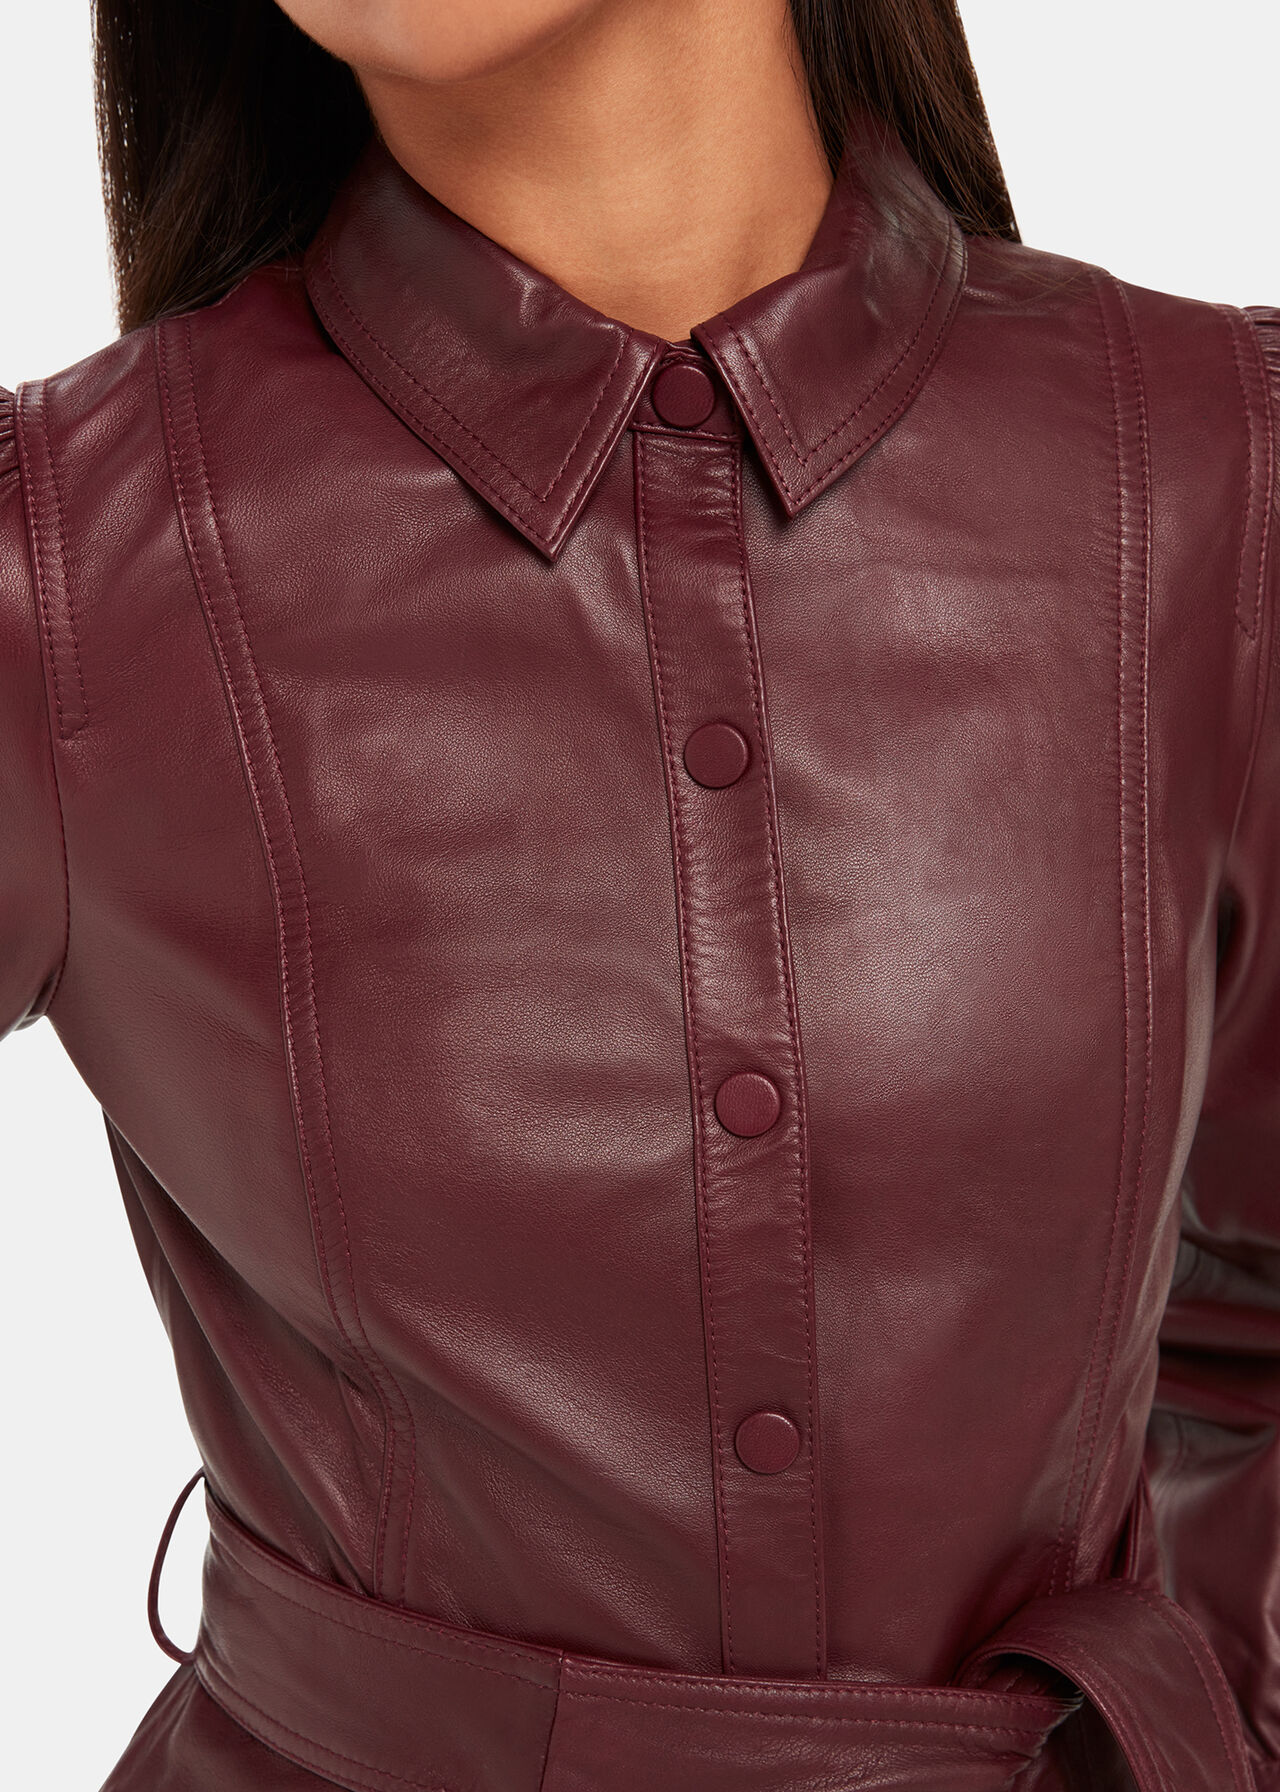 Phoebe Leather Shirt Dress